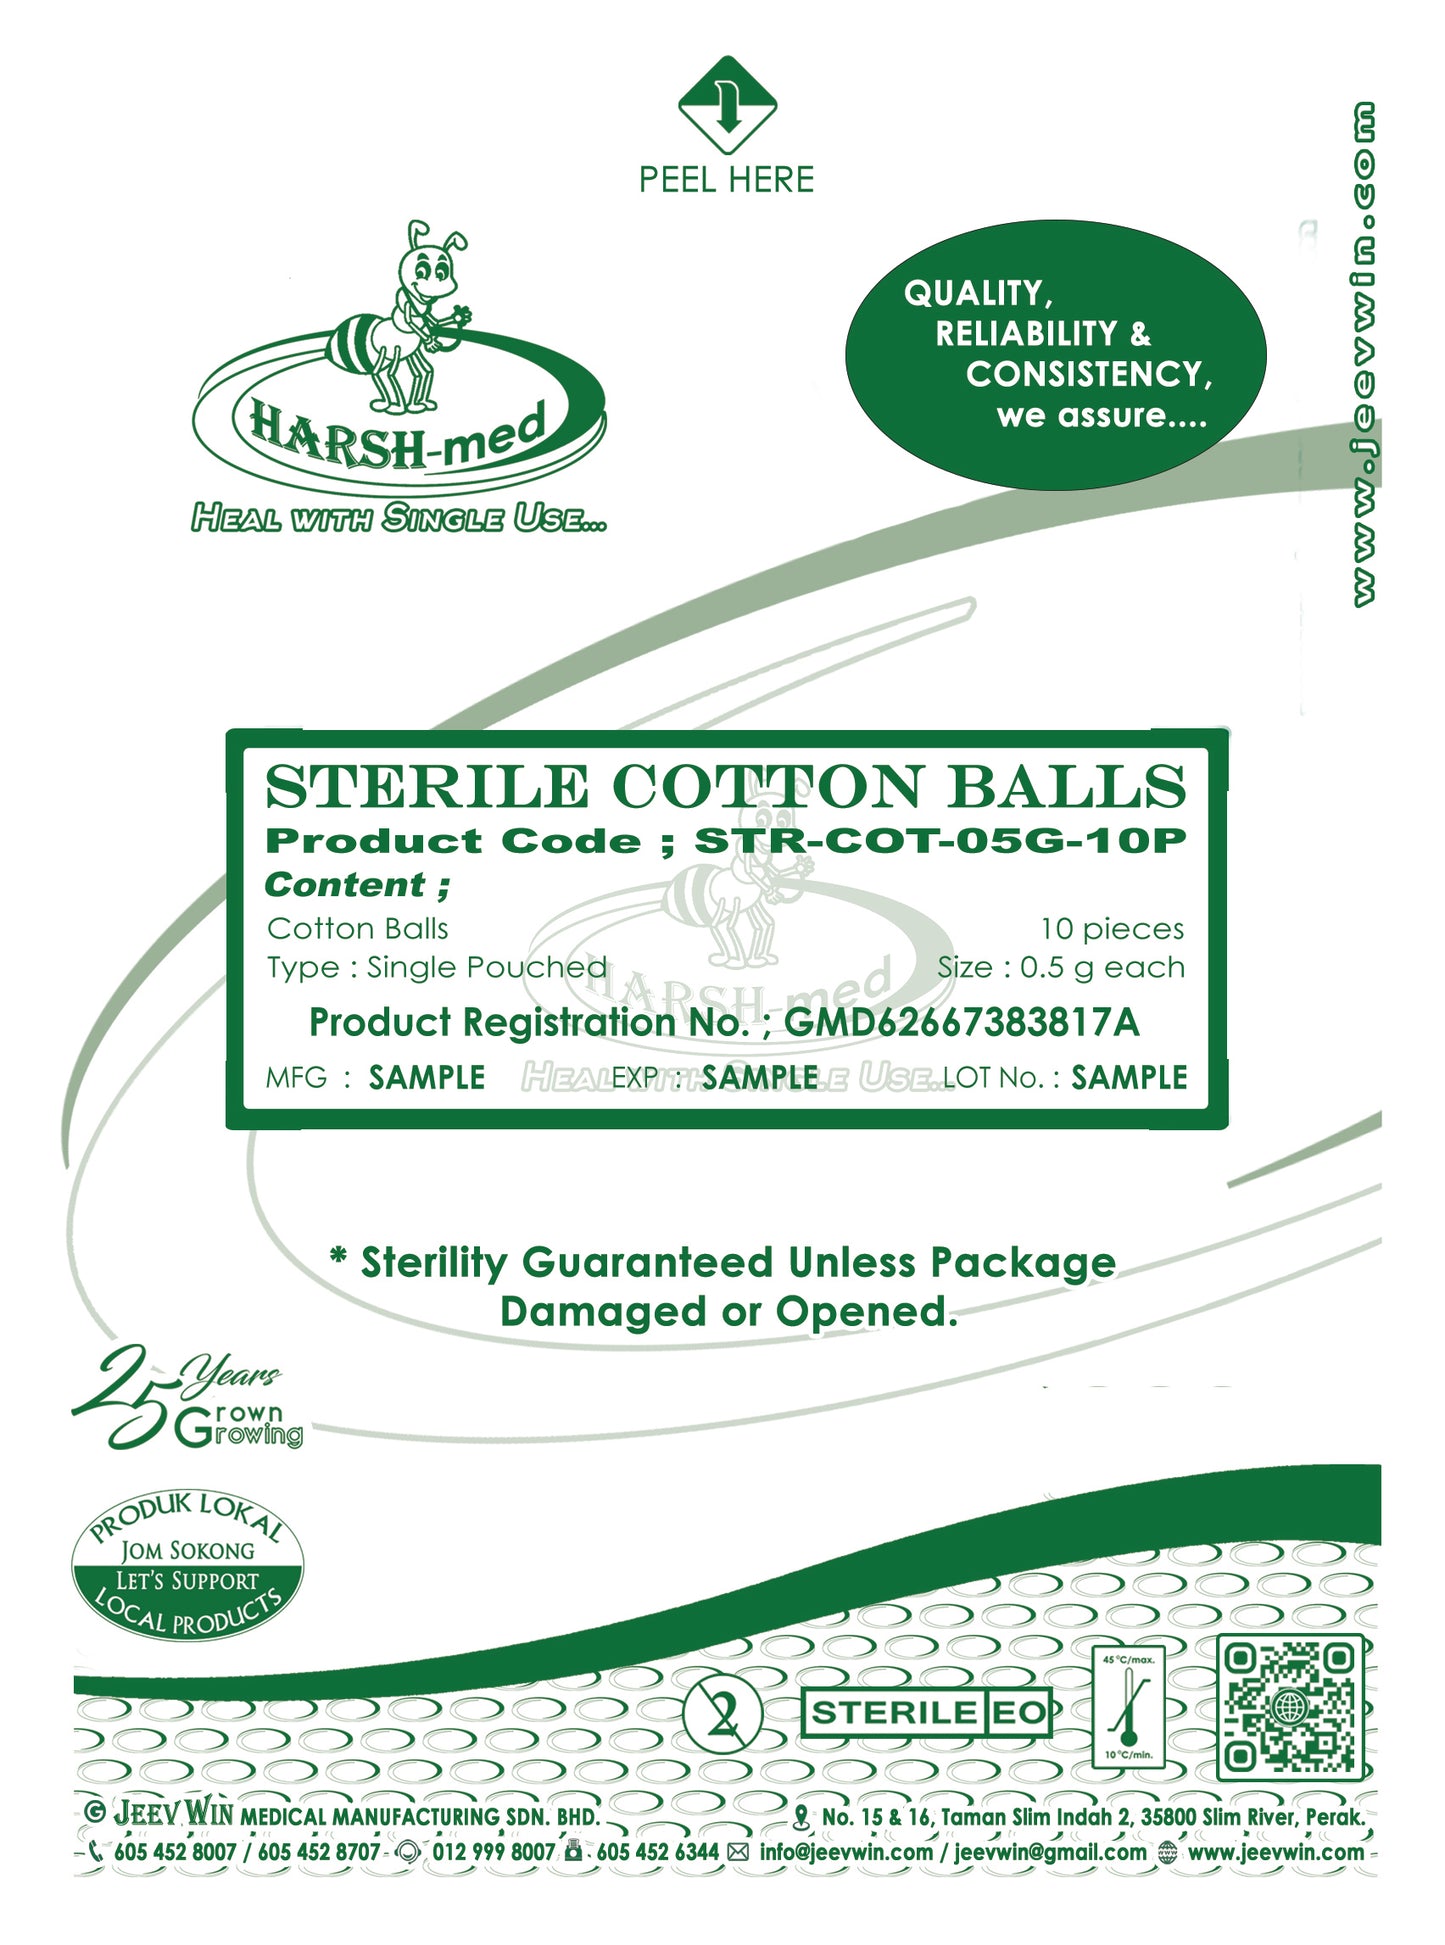 STERILE COTTON BALLS - 0.5g each (10 pcs)